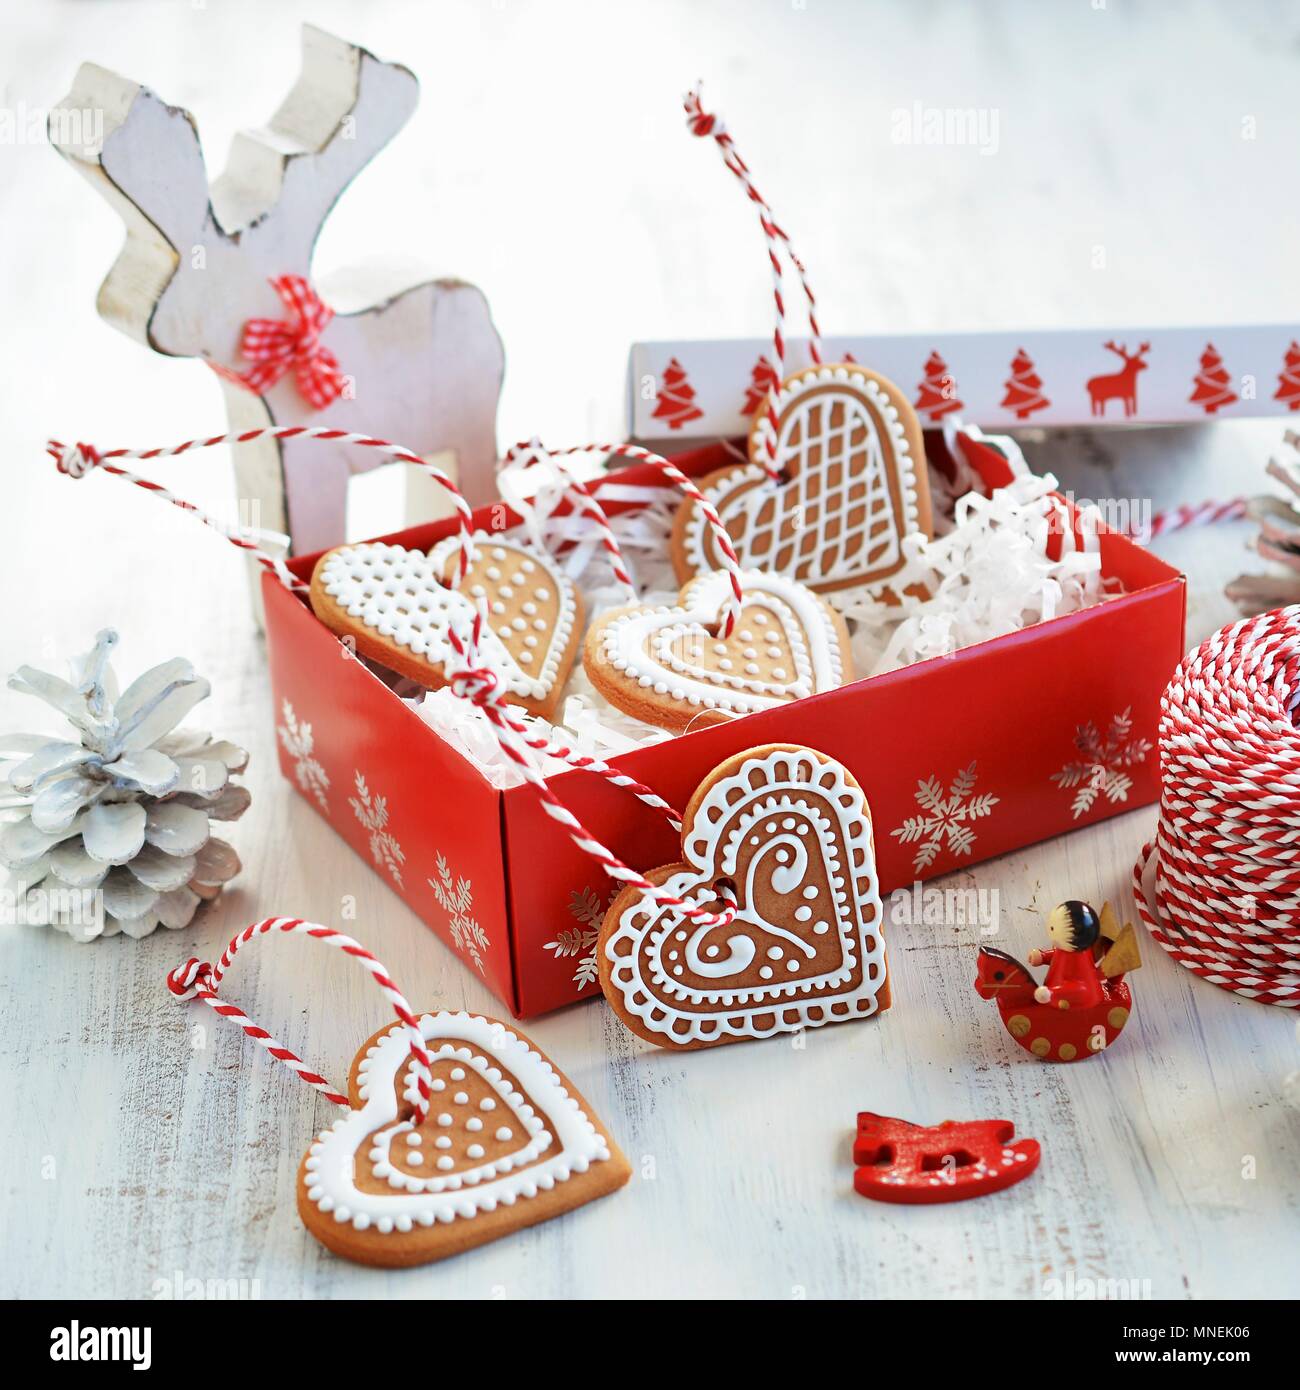 Confezioni Biscotti Di Natale.Biscotti Di Natale Decorato Con Glassa In Una Confezione Regalo Foto Stock Alamy